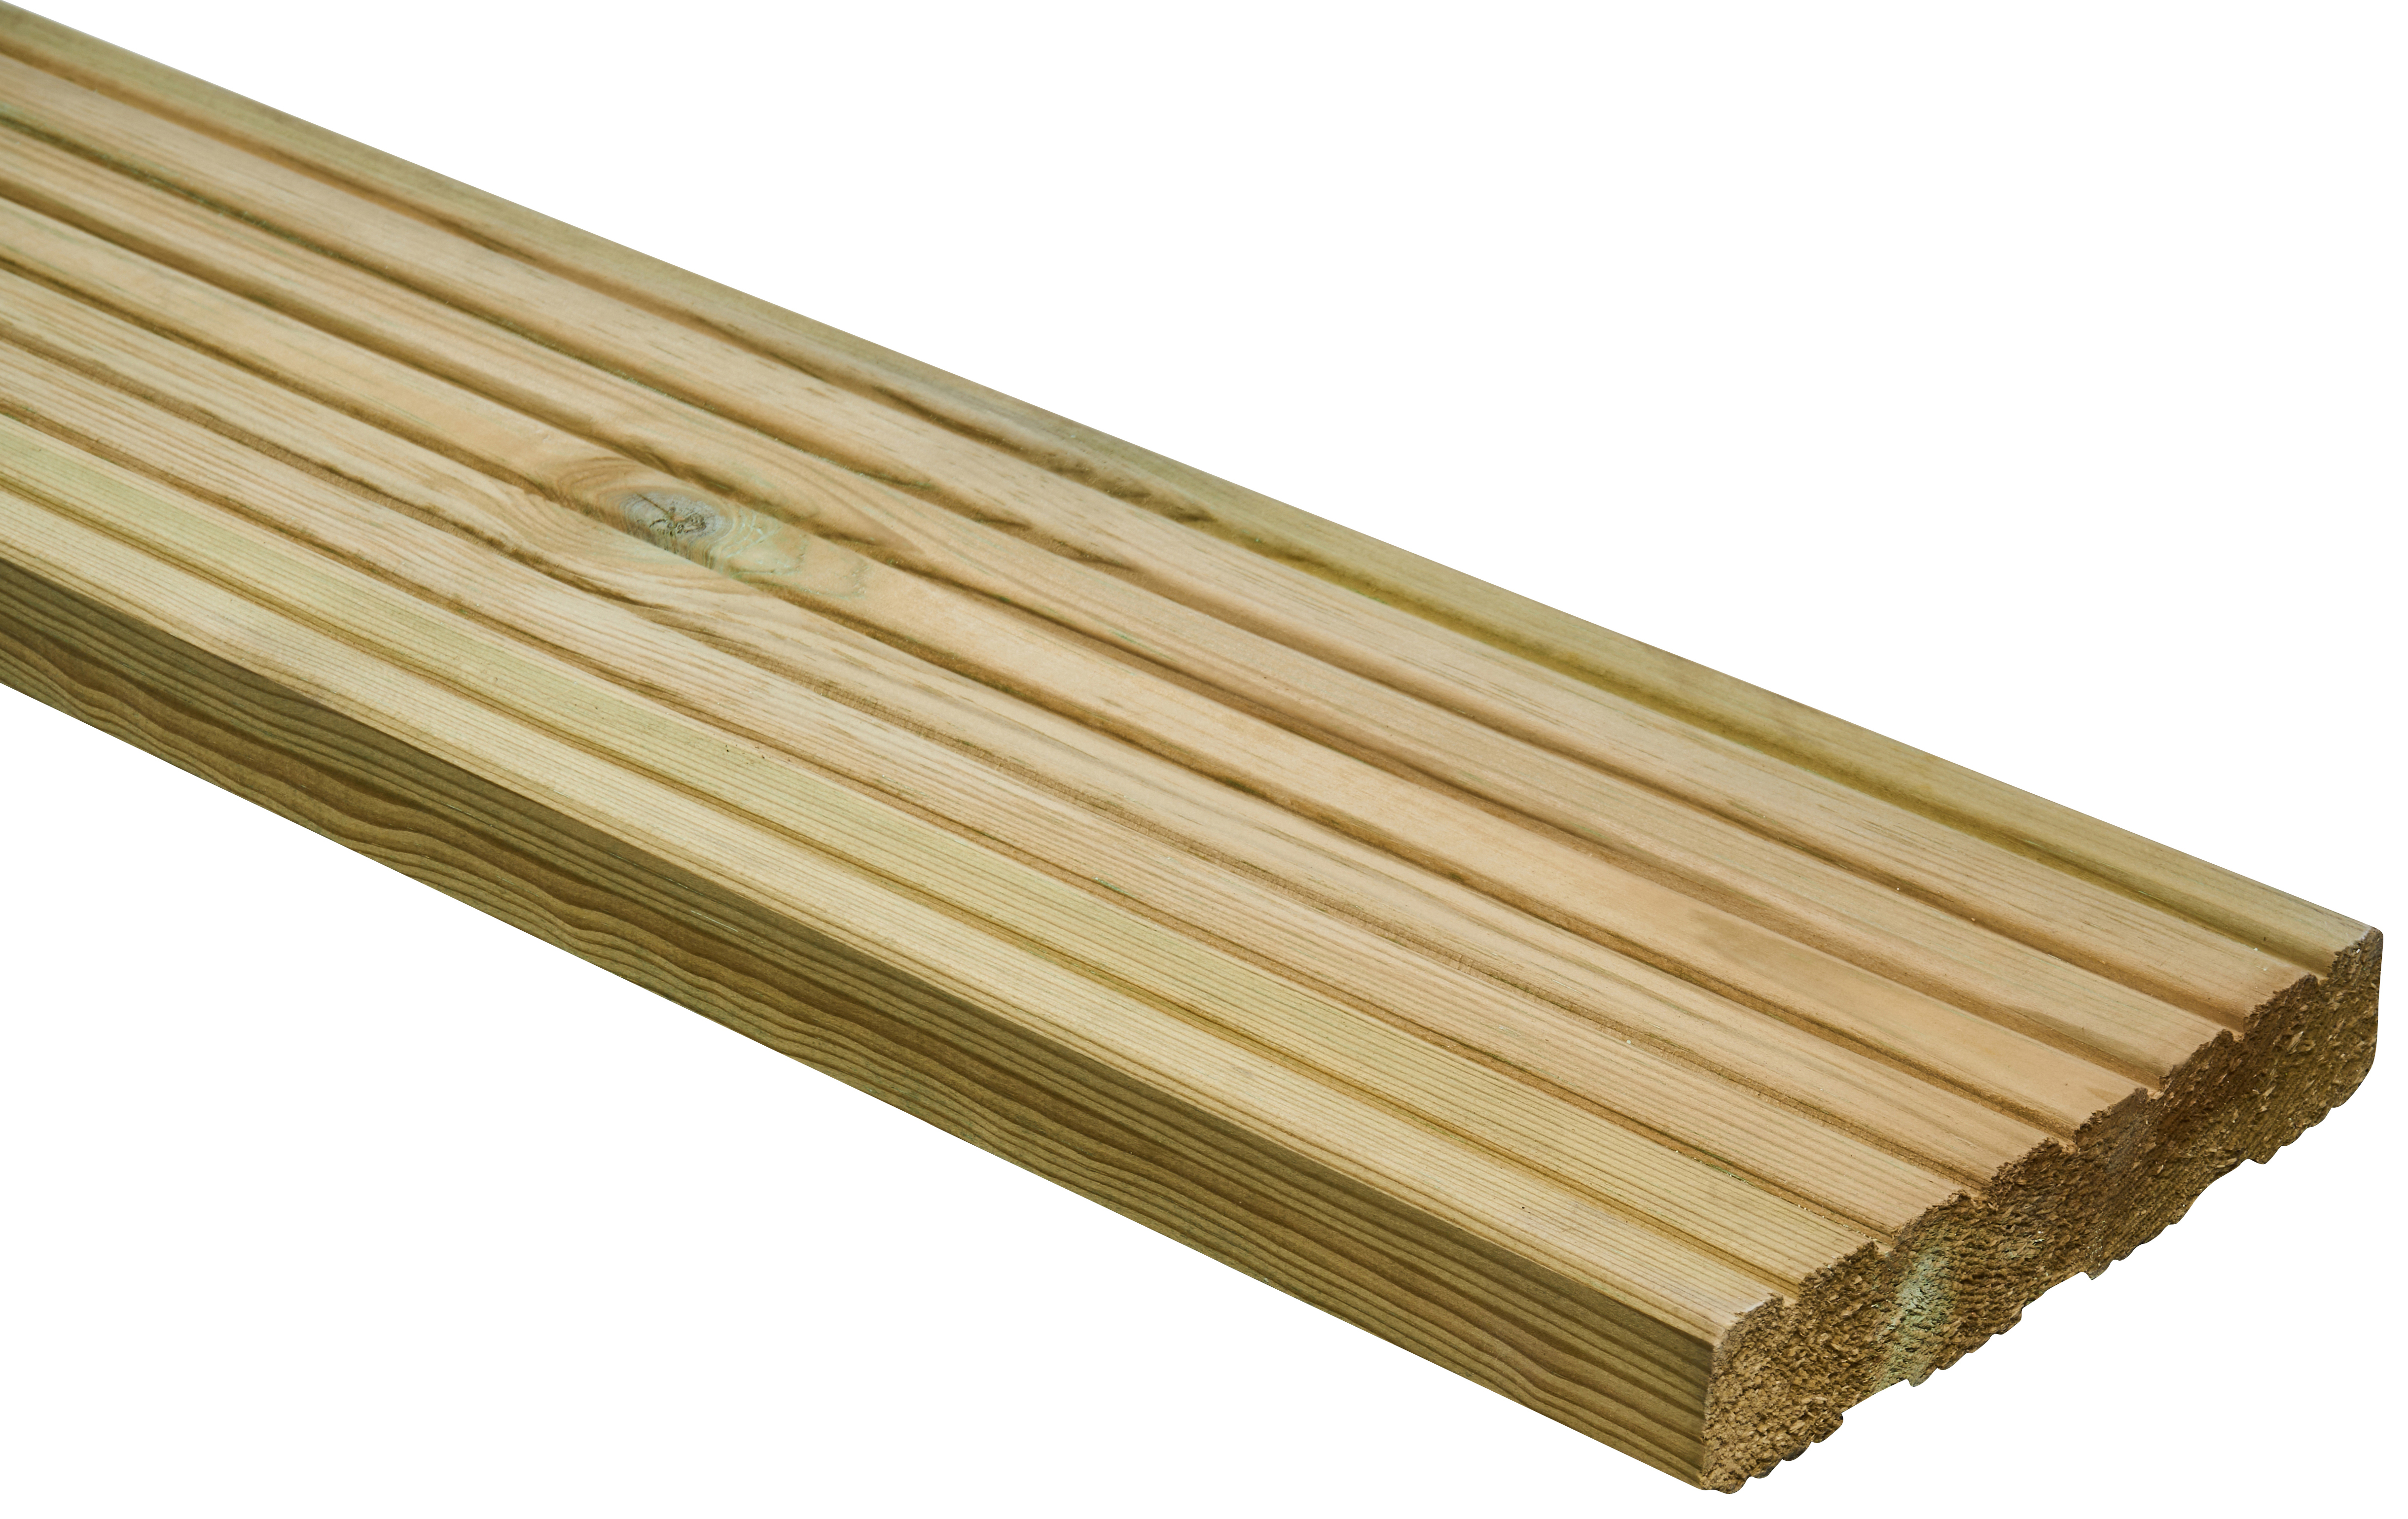 Wickes Pro Timber Deck Board - 27 x 144 x 3600mm